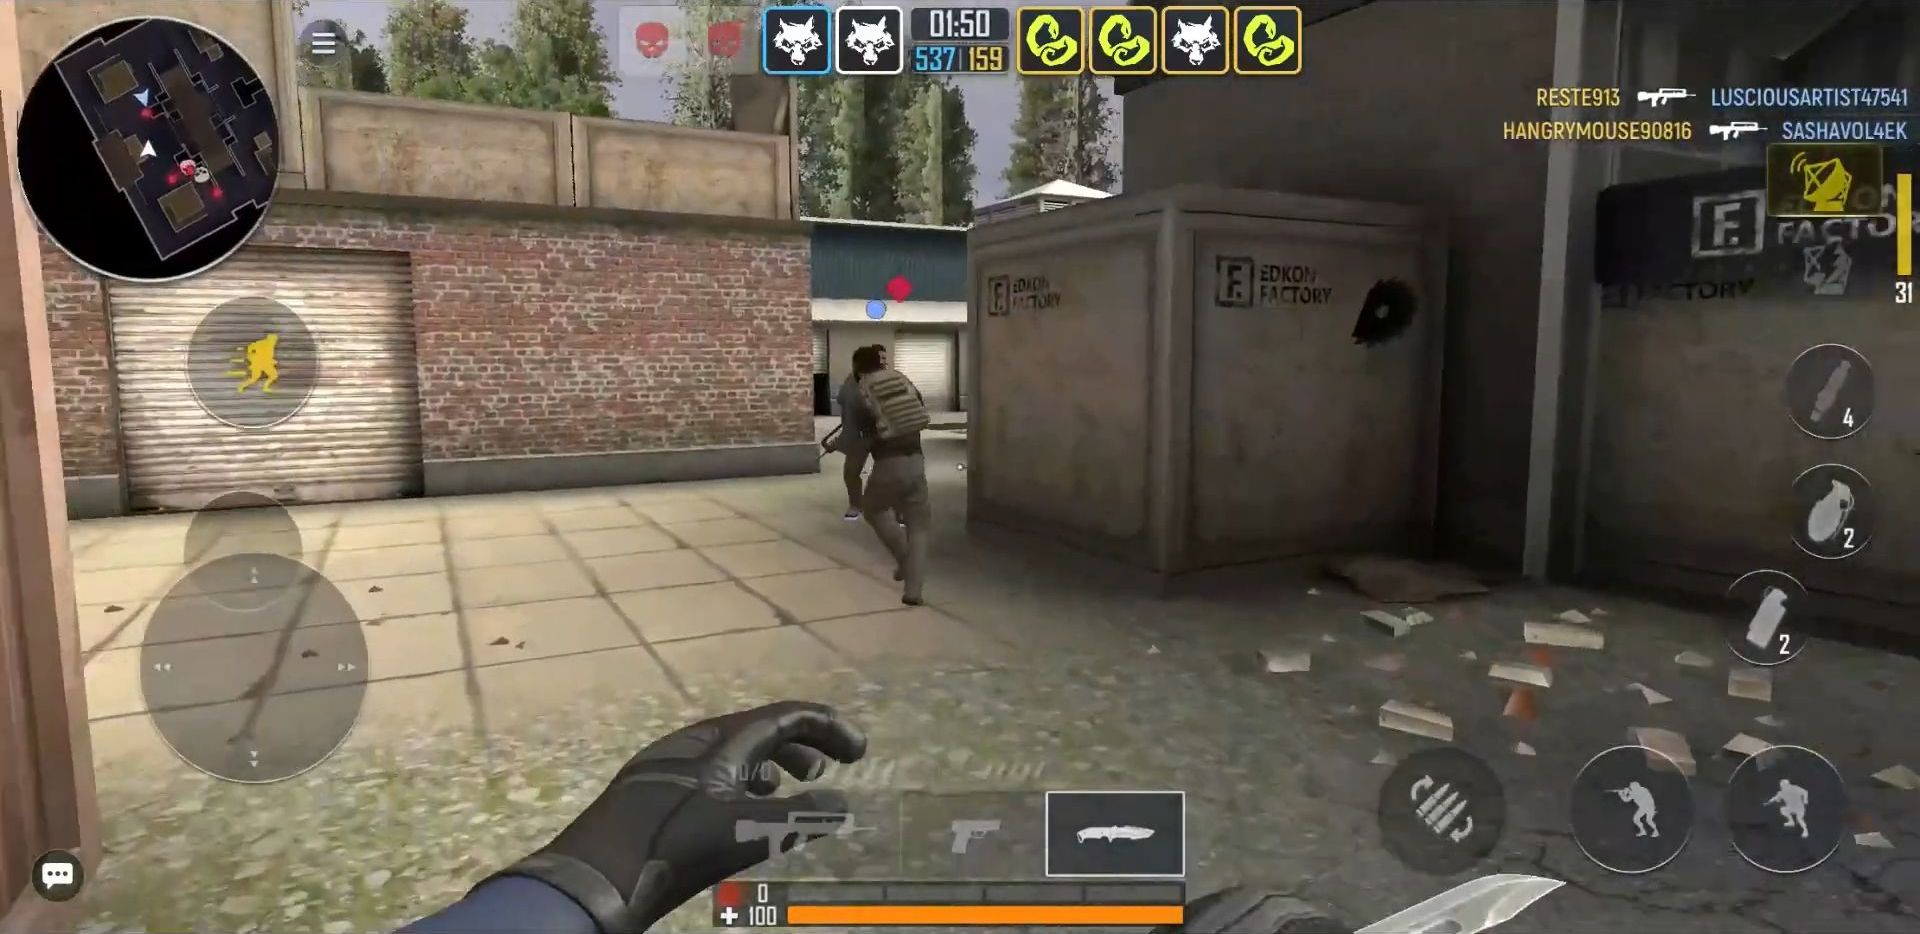 Baixar e jogar Fire Strike Online - Jogo de tiro FPS no PC com